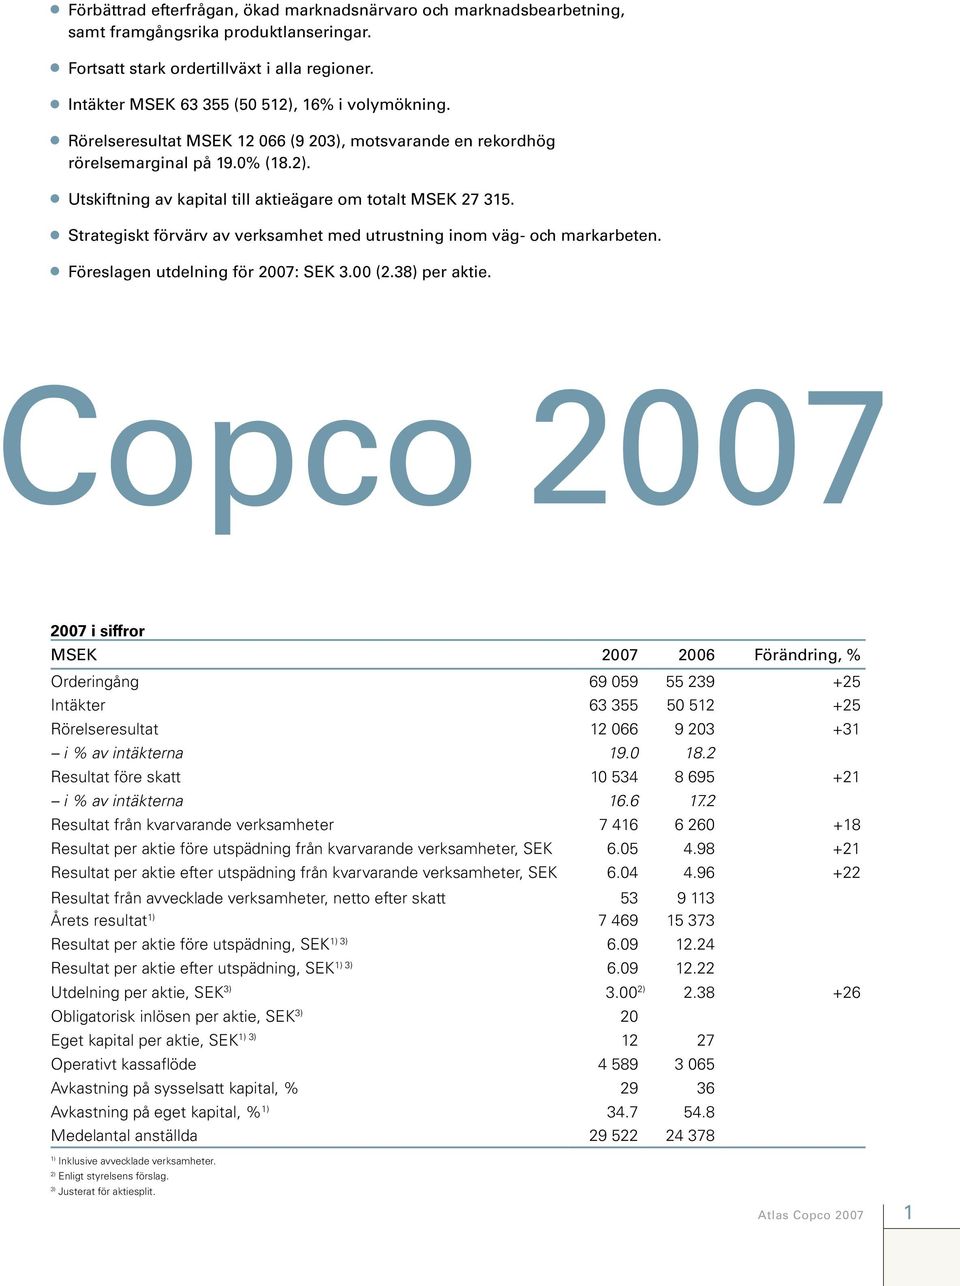 Strategiskt förvärv av verksamhet med utrustning inom väg- och markarbeten. Föreslagen utdelning för 2007: SEK 3.00 (2.38) per aktie.